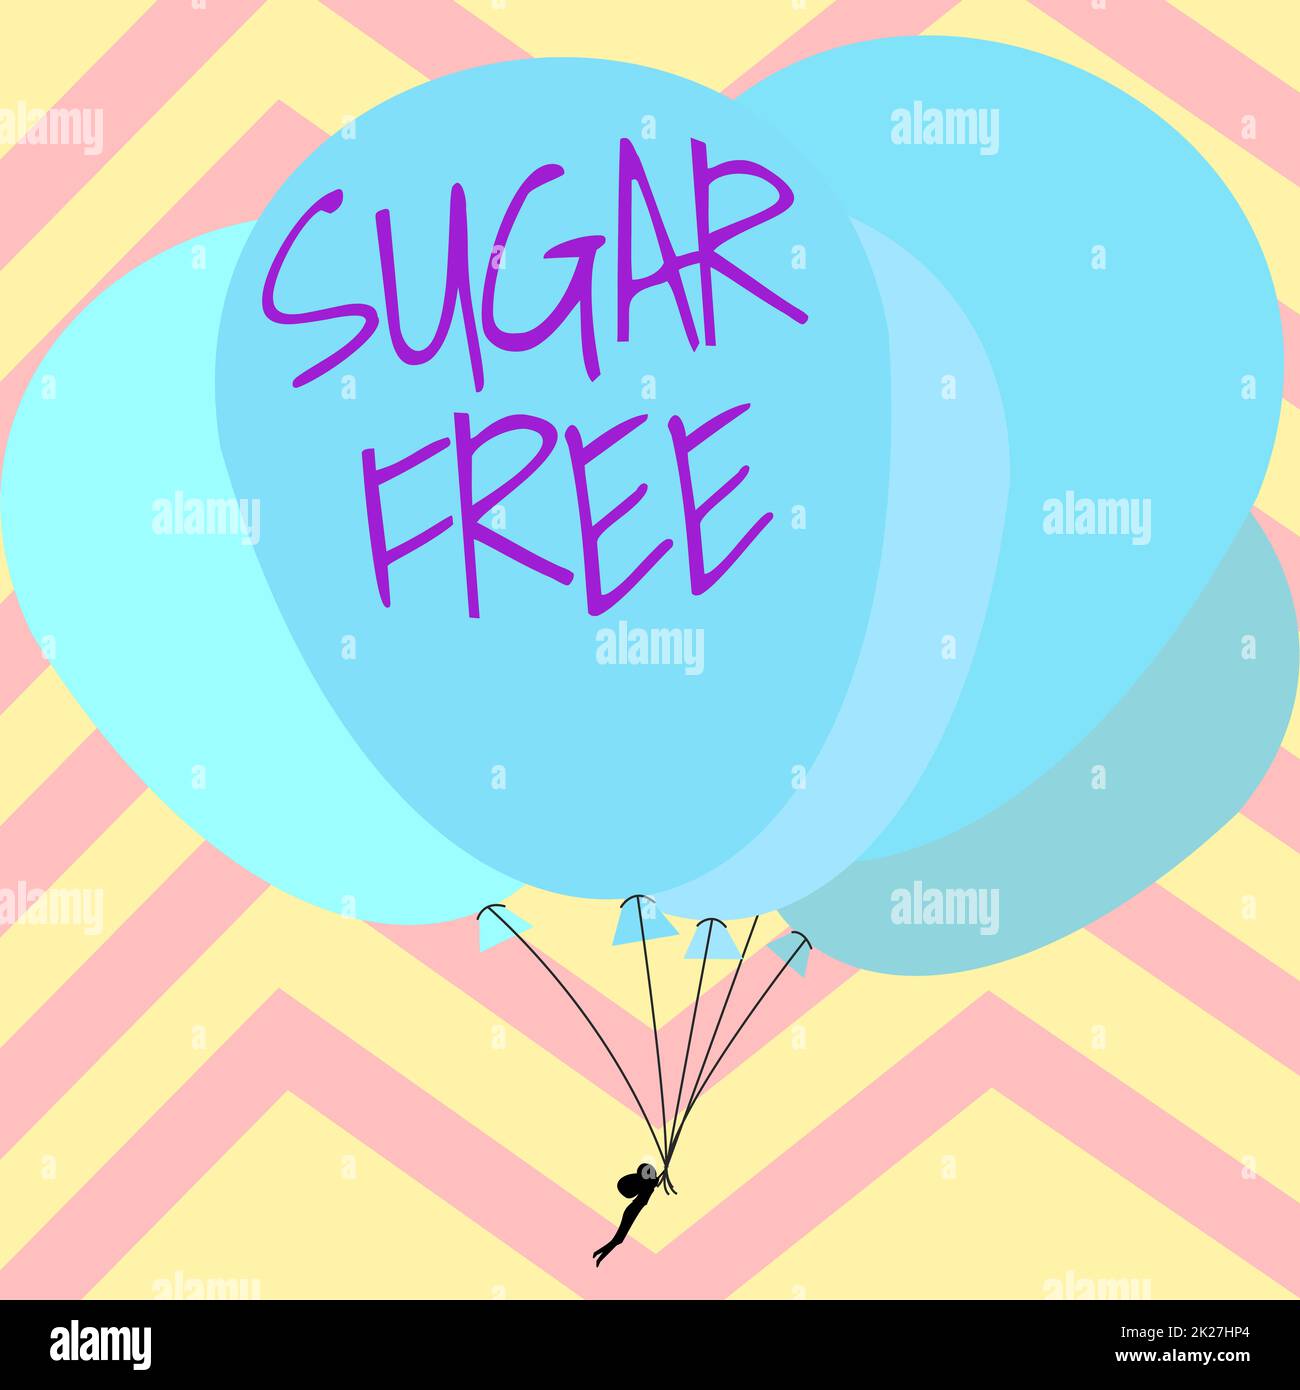 Handgeschriebener Text Zuckerfrei. Wörter, die auf geschrieben werden, enthalten keinen Zucker, sondern nur künstliche Süßstoffe, sondern man Hold bunte Ballons Drawing Flying around Striped Background. Stockfoto